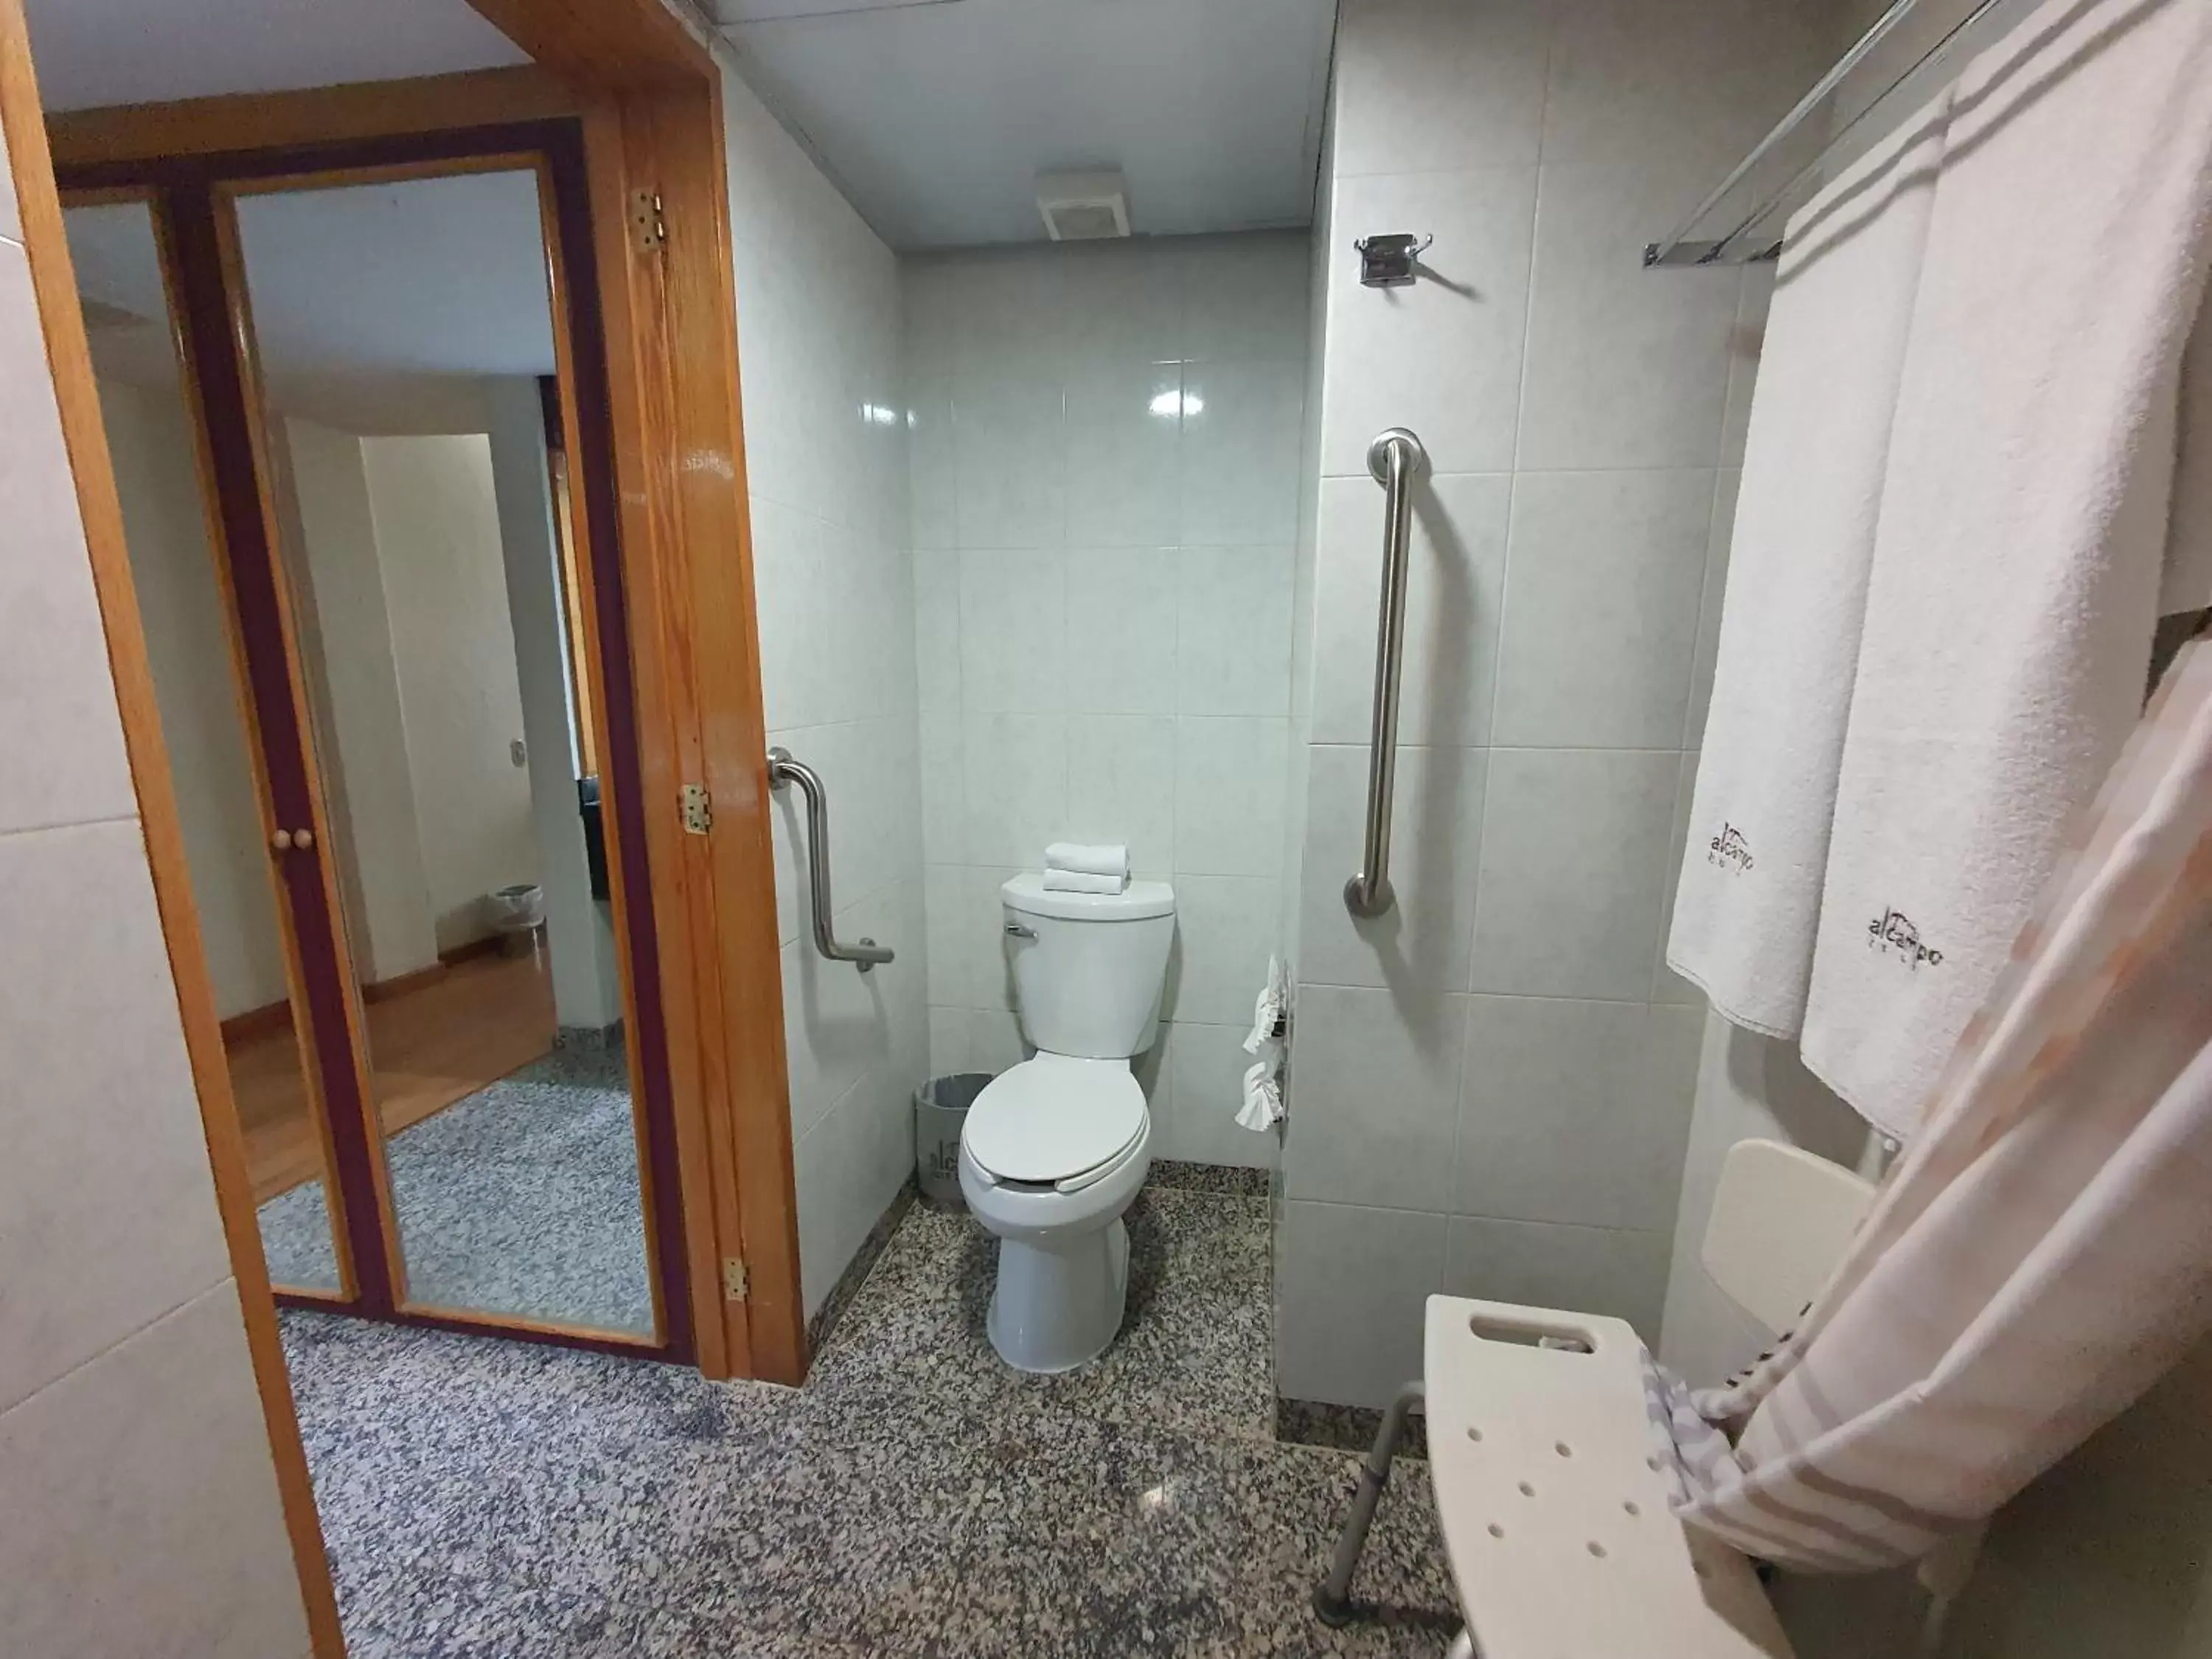 Bathroom in Hotel Alcampo